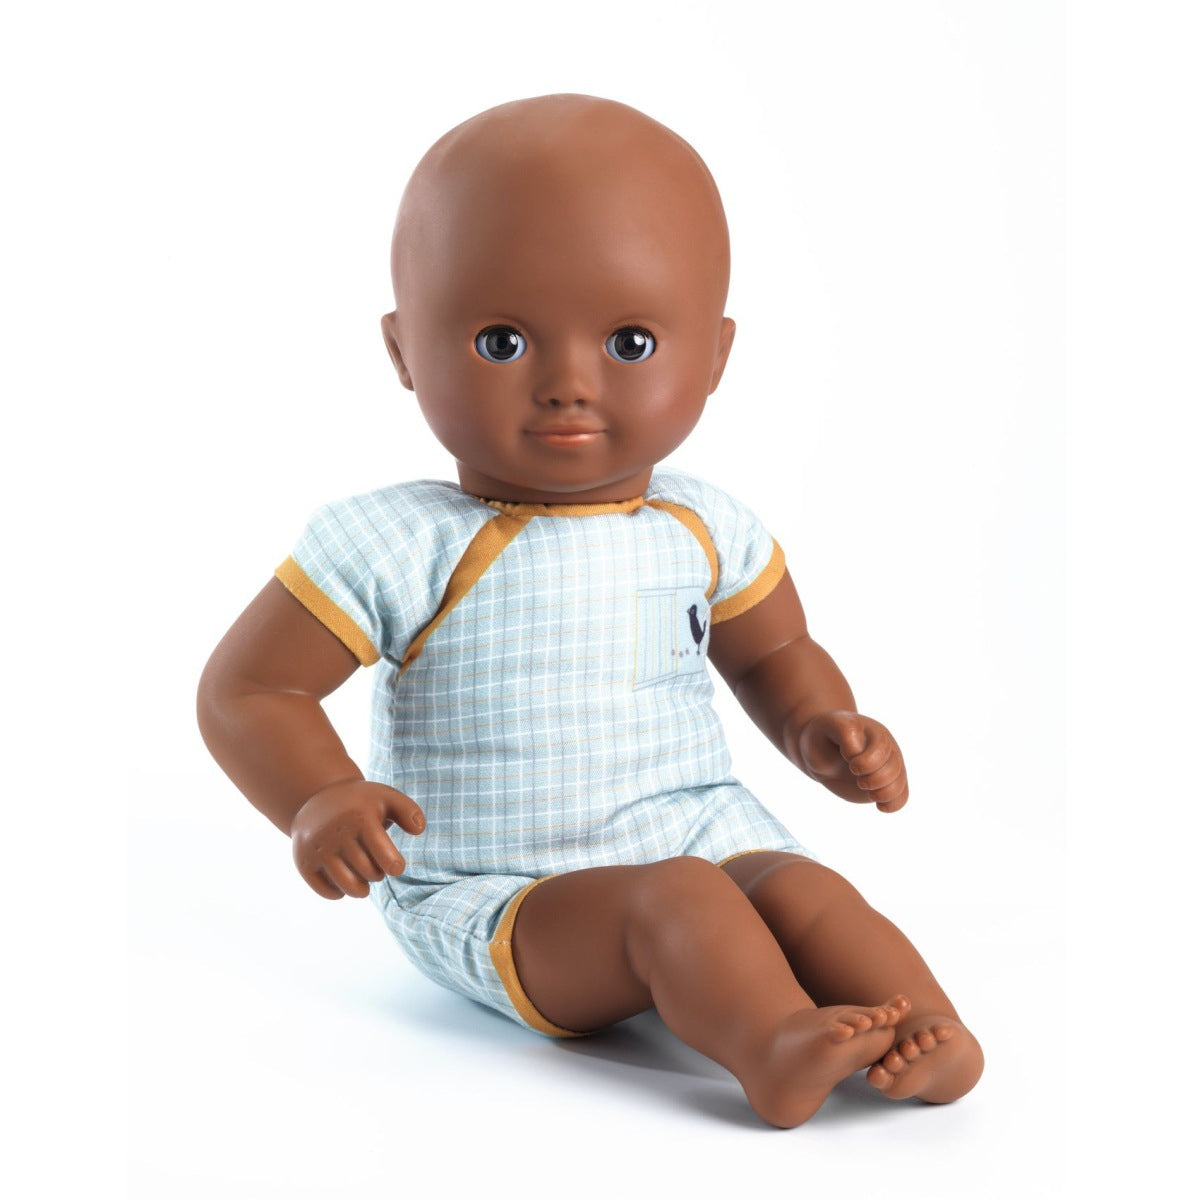 DJECO Puppe Mimoas mit dunklen Augen und dem passenden Outfit.  Puppenbaby Mimosa ist eine Puppe für Kinder ab 18 Monaten. Weich und anschmiegsam (32 cm) ist die Puppe von DJECO perfekt für kleine Arme geeignet. Ihr weicher Körper ist mit einem hübschen „Body" bedruckt. Ihr Gesicht, ihre Arme und Beine sind aus sehr weichem Vinyl, das sich angenehm anfühlt. 